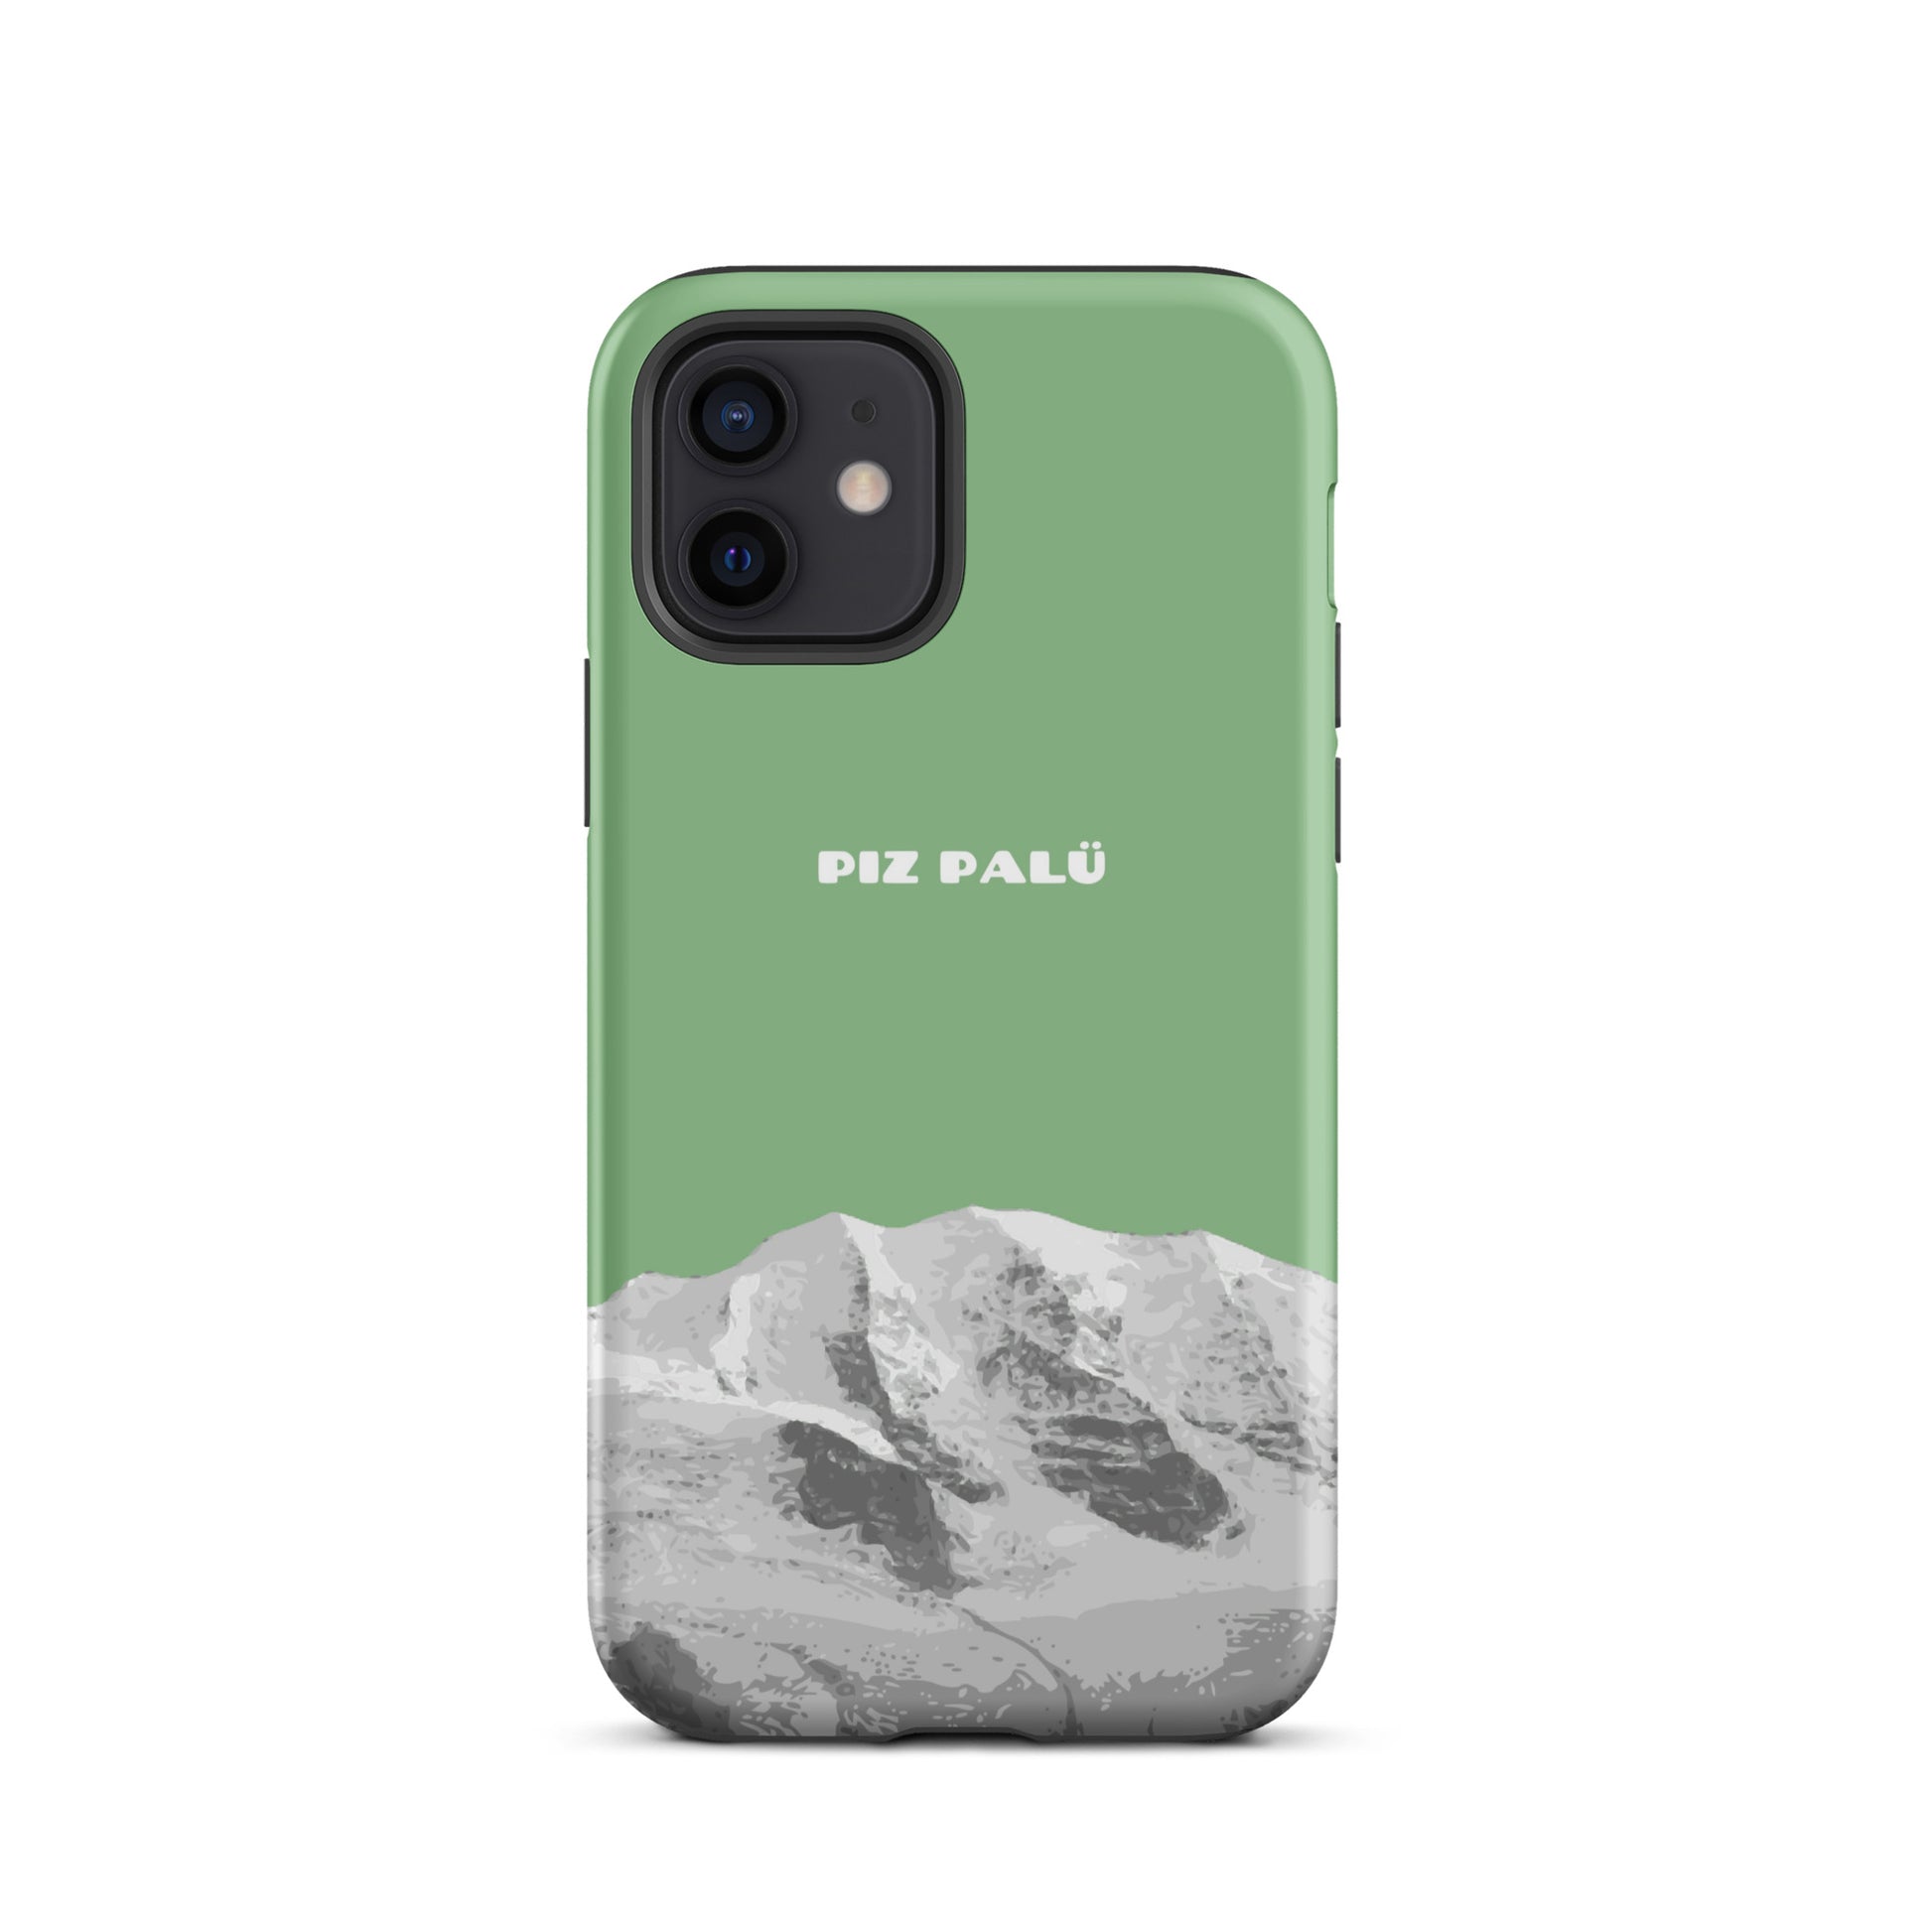 Hülle für das iPhone 12 von Apple in der Farbe Hellgrün, dass den Piz Palü in Graubünden zeigt.